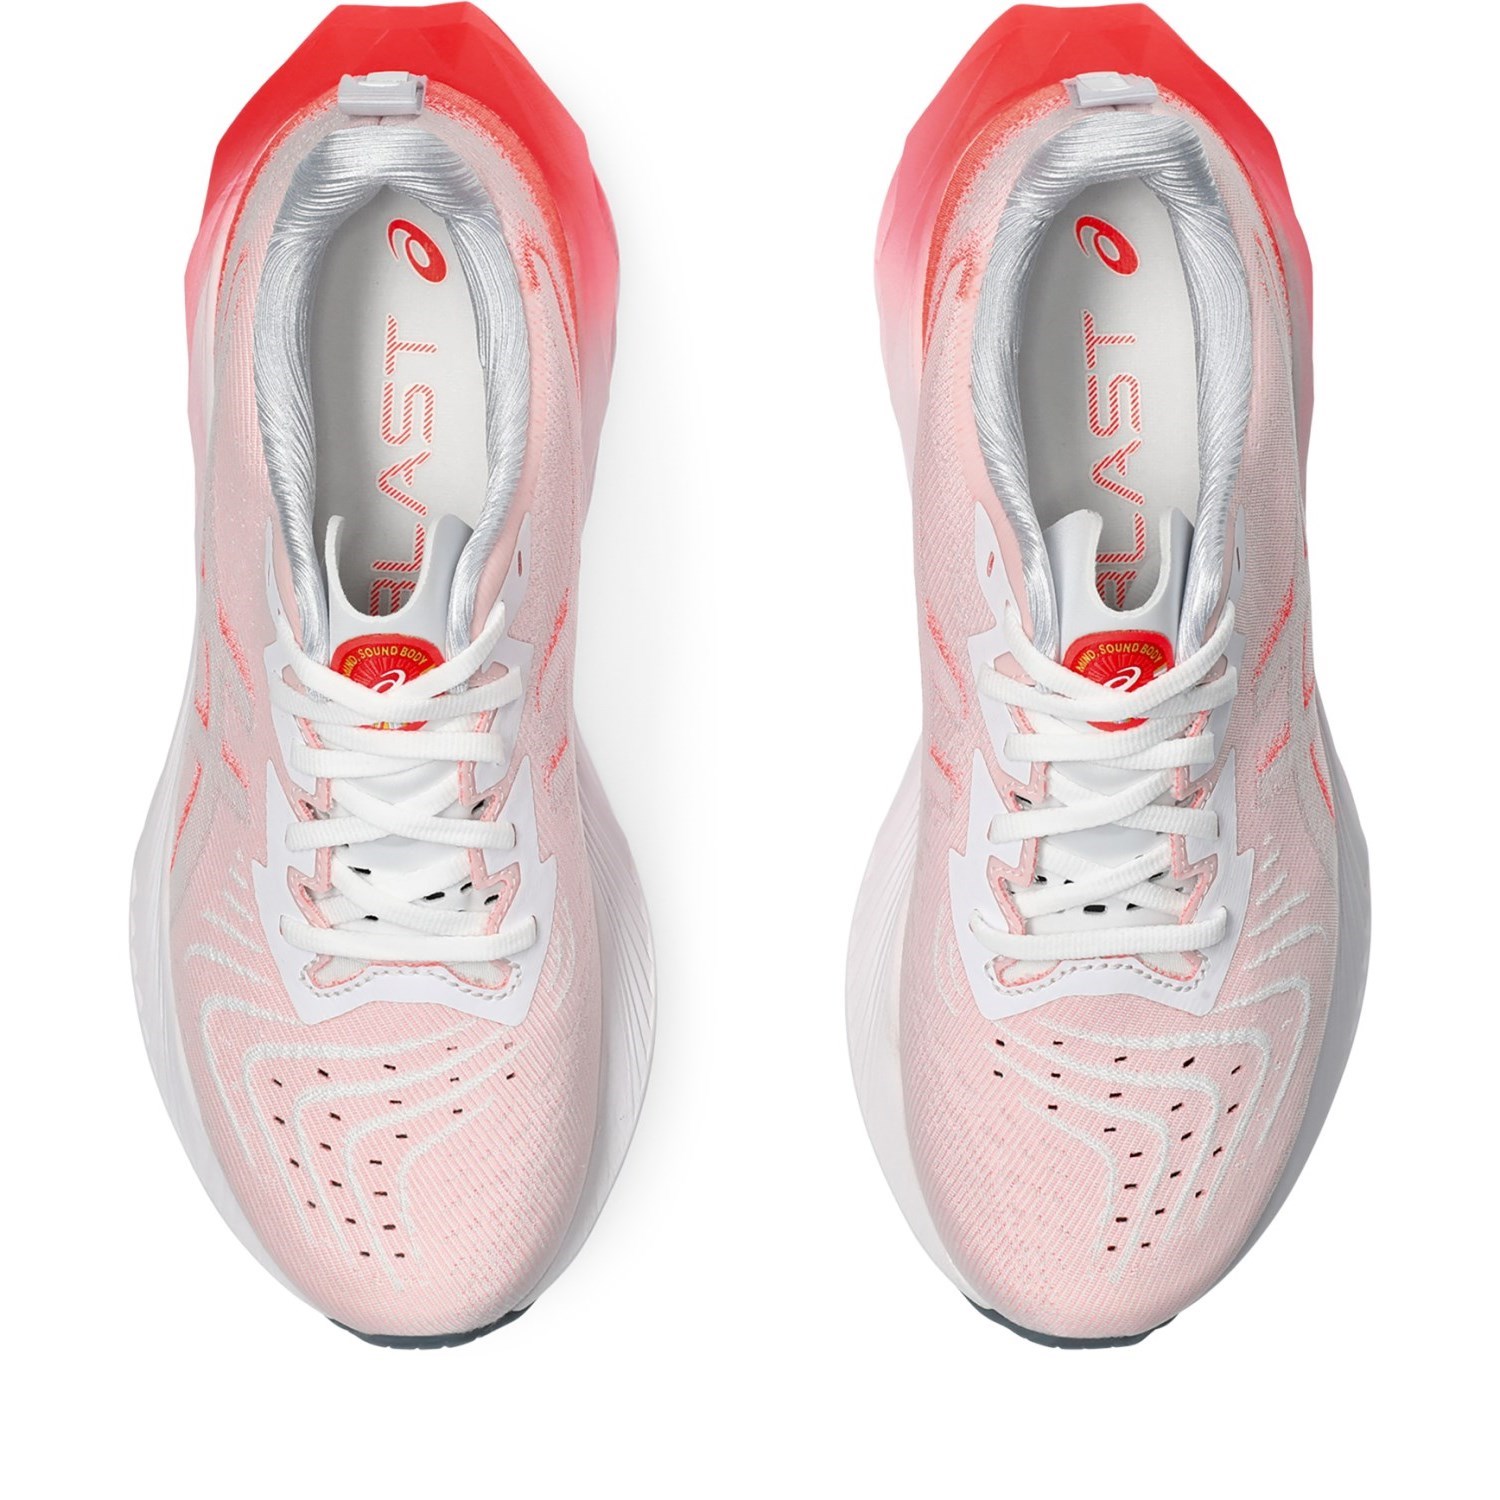 Asics NovaBlast 4 - Womens Running Shoes - White/Sunrise Red | Sportitude